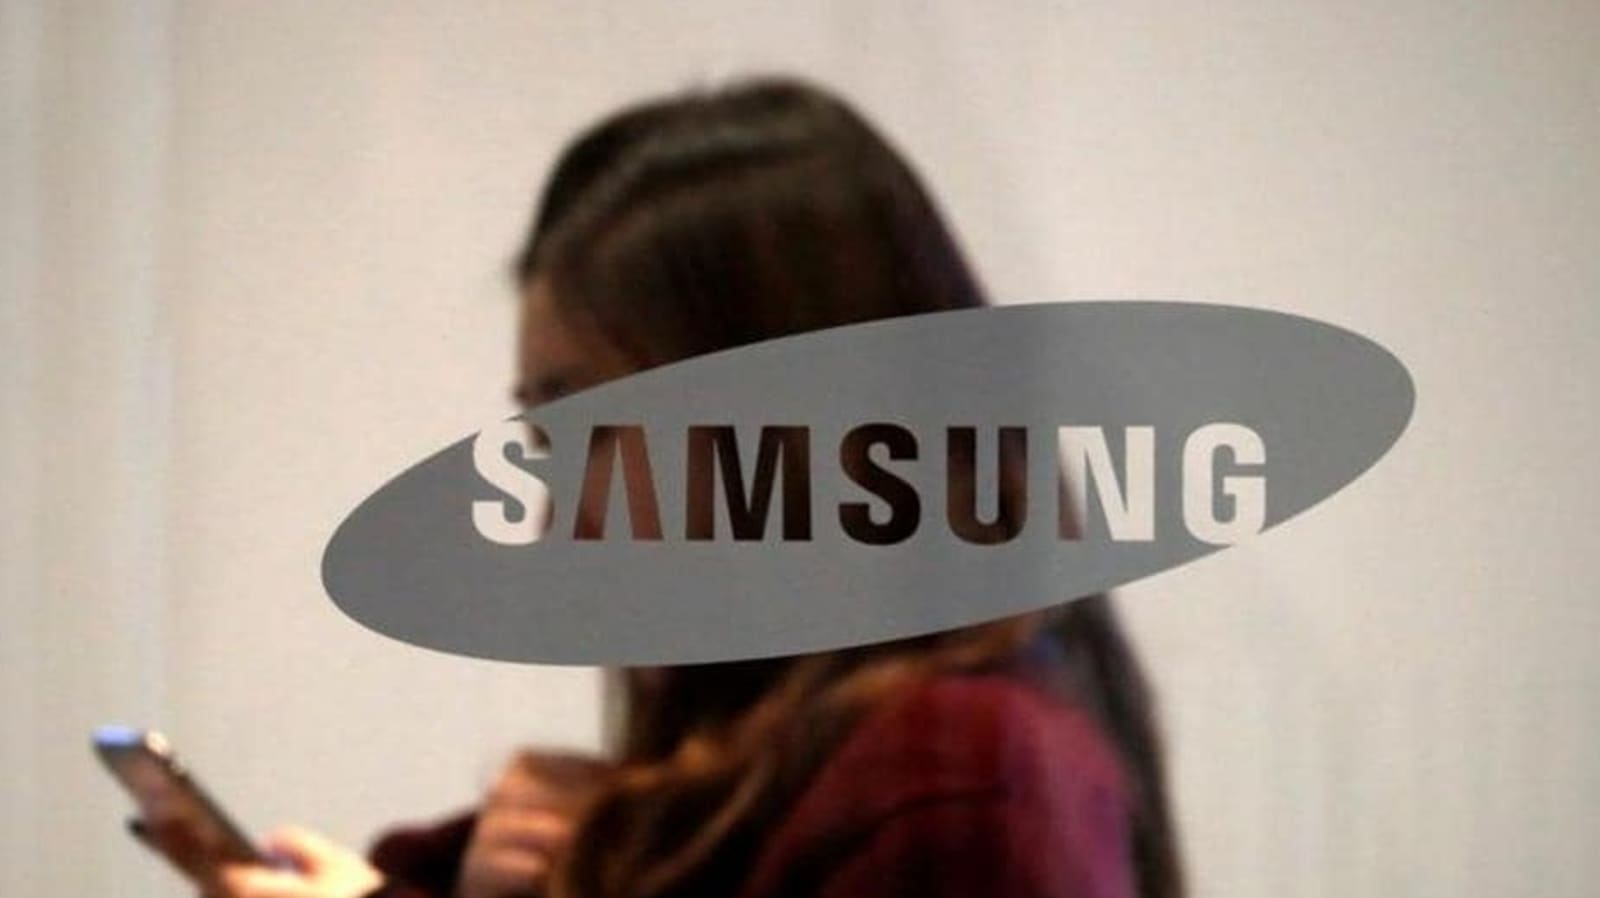 삼성 갤럭시 노트 6 한국 출시: 스마트폰 주요 기능